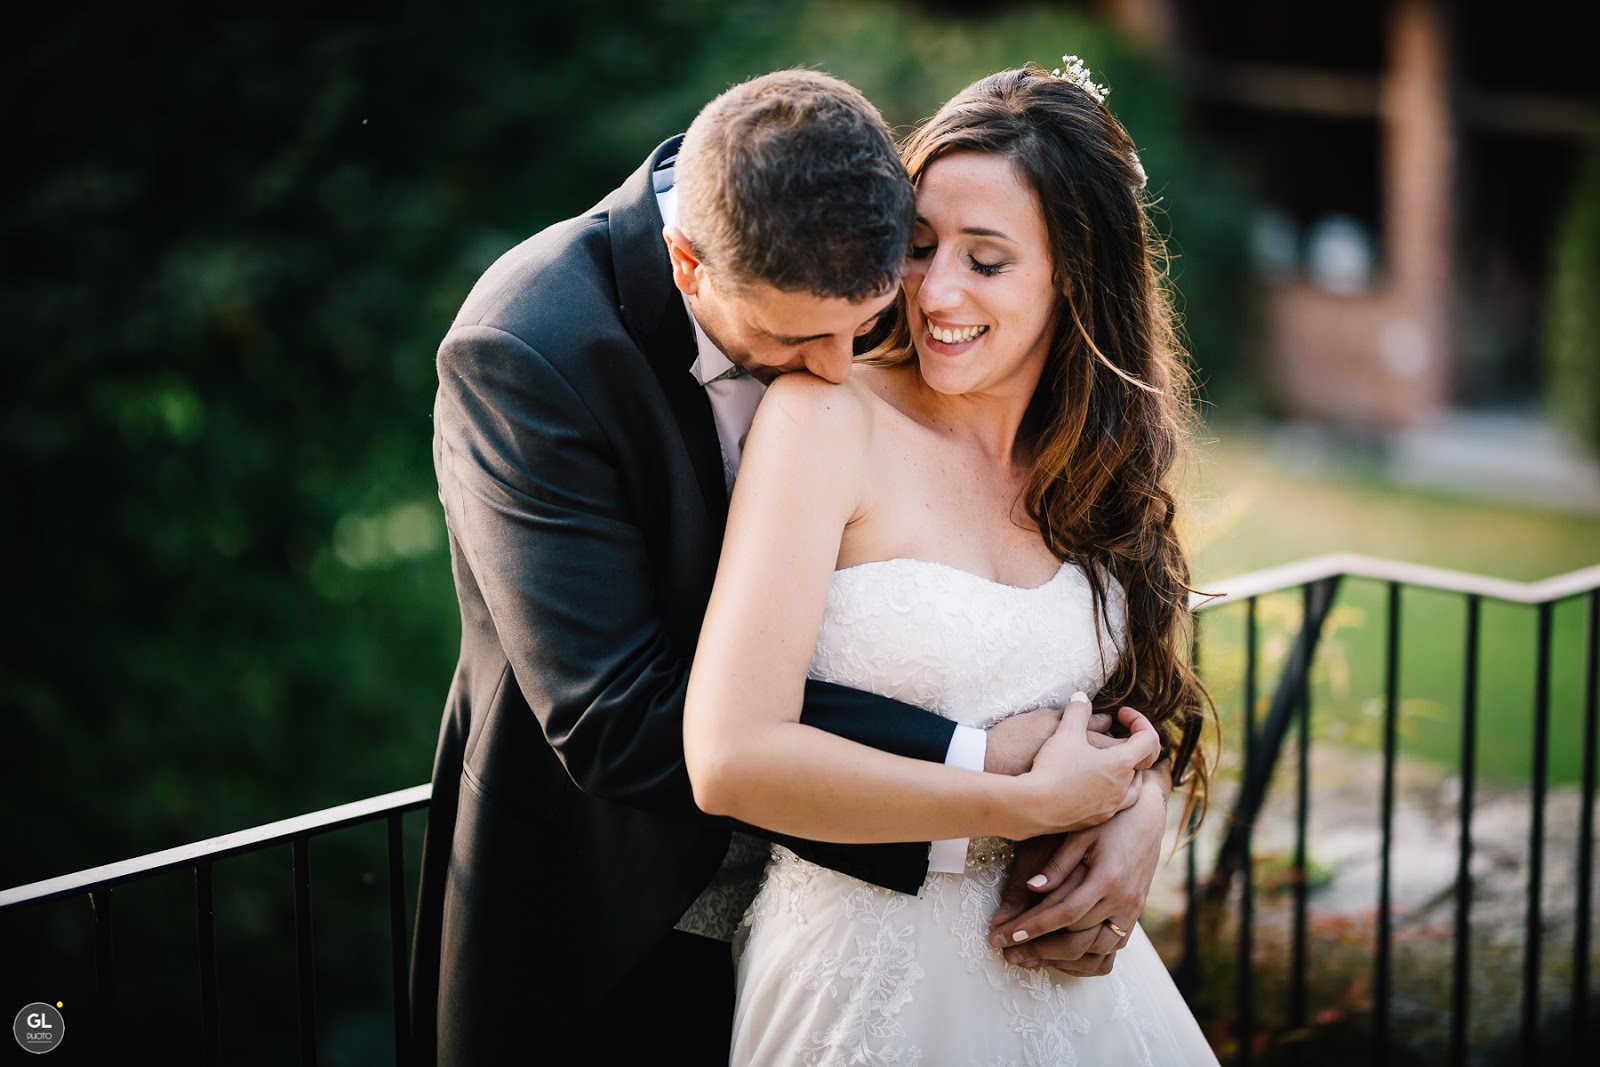 [Real Wedding] Sposarsi a Novara: matrimonio rustico dai dettagli in legno